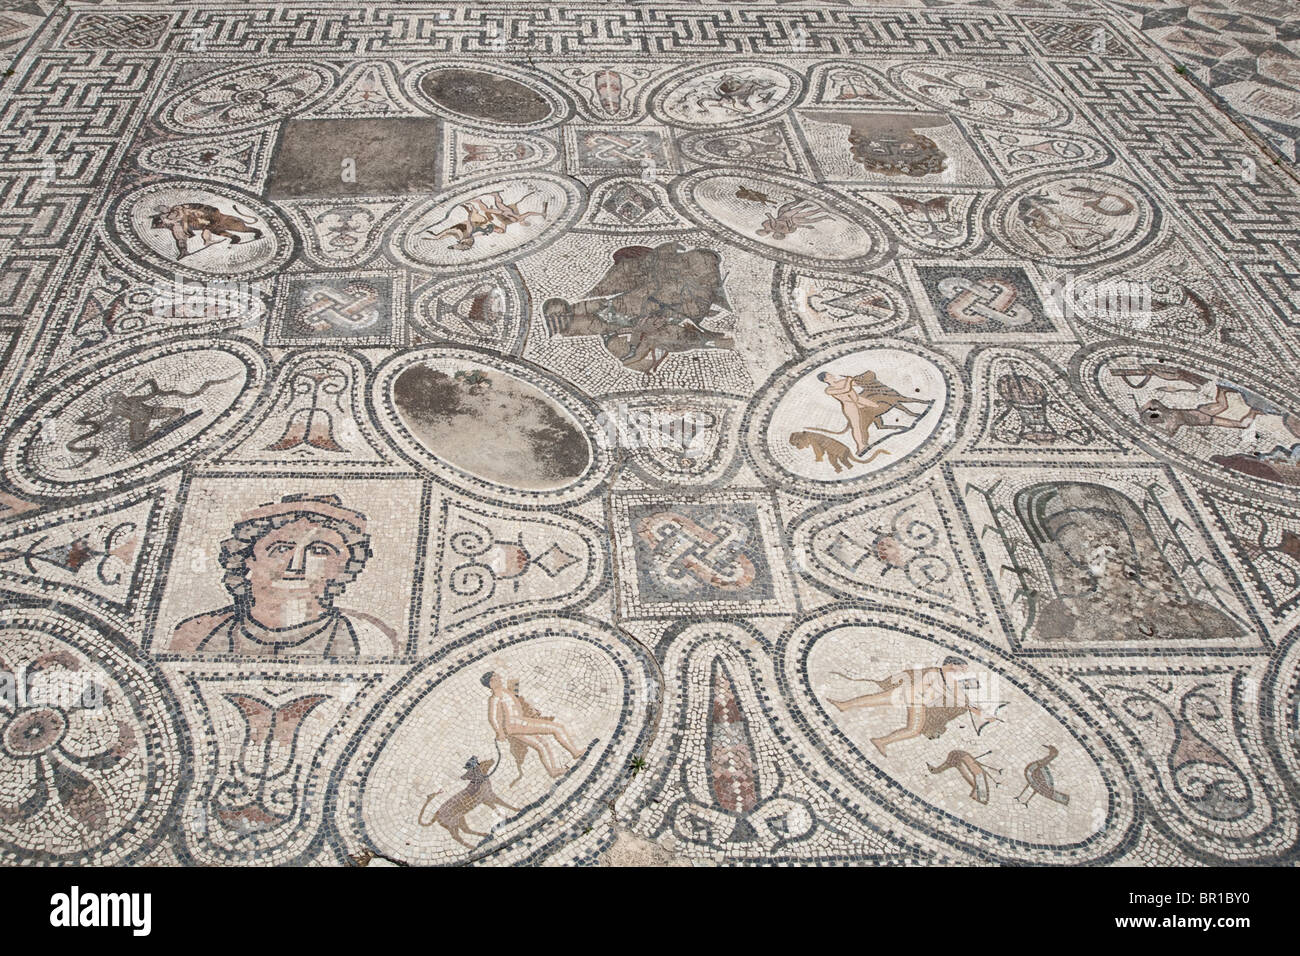 12 travaux d'hercule de salle à Mosaic, ville romaine de Volubilis, Maroc Banque D'Images